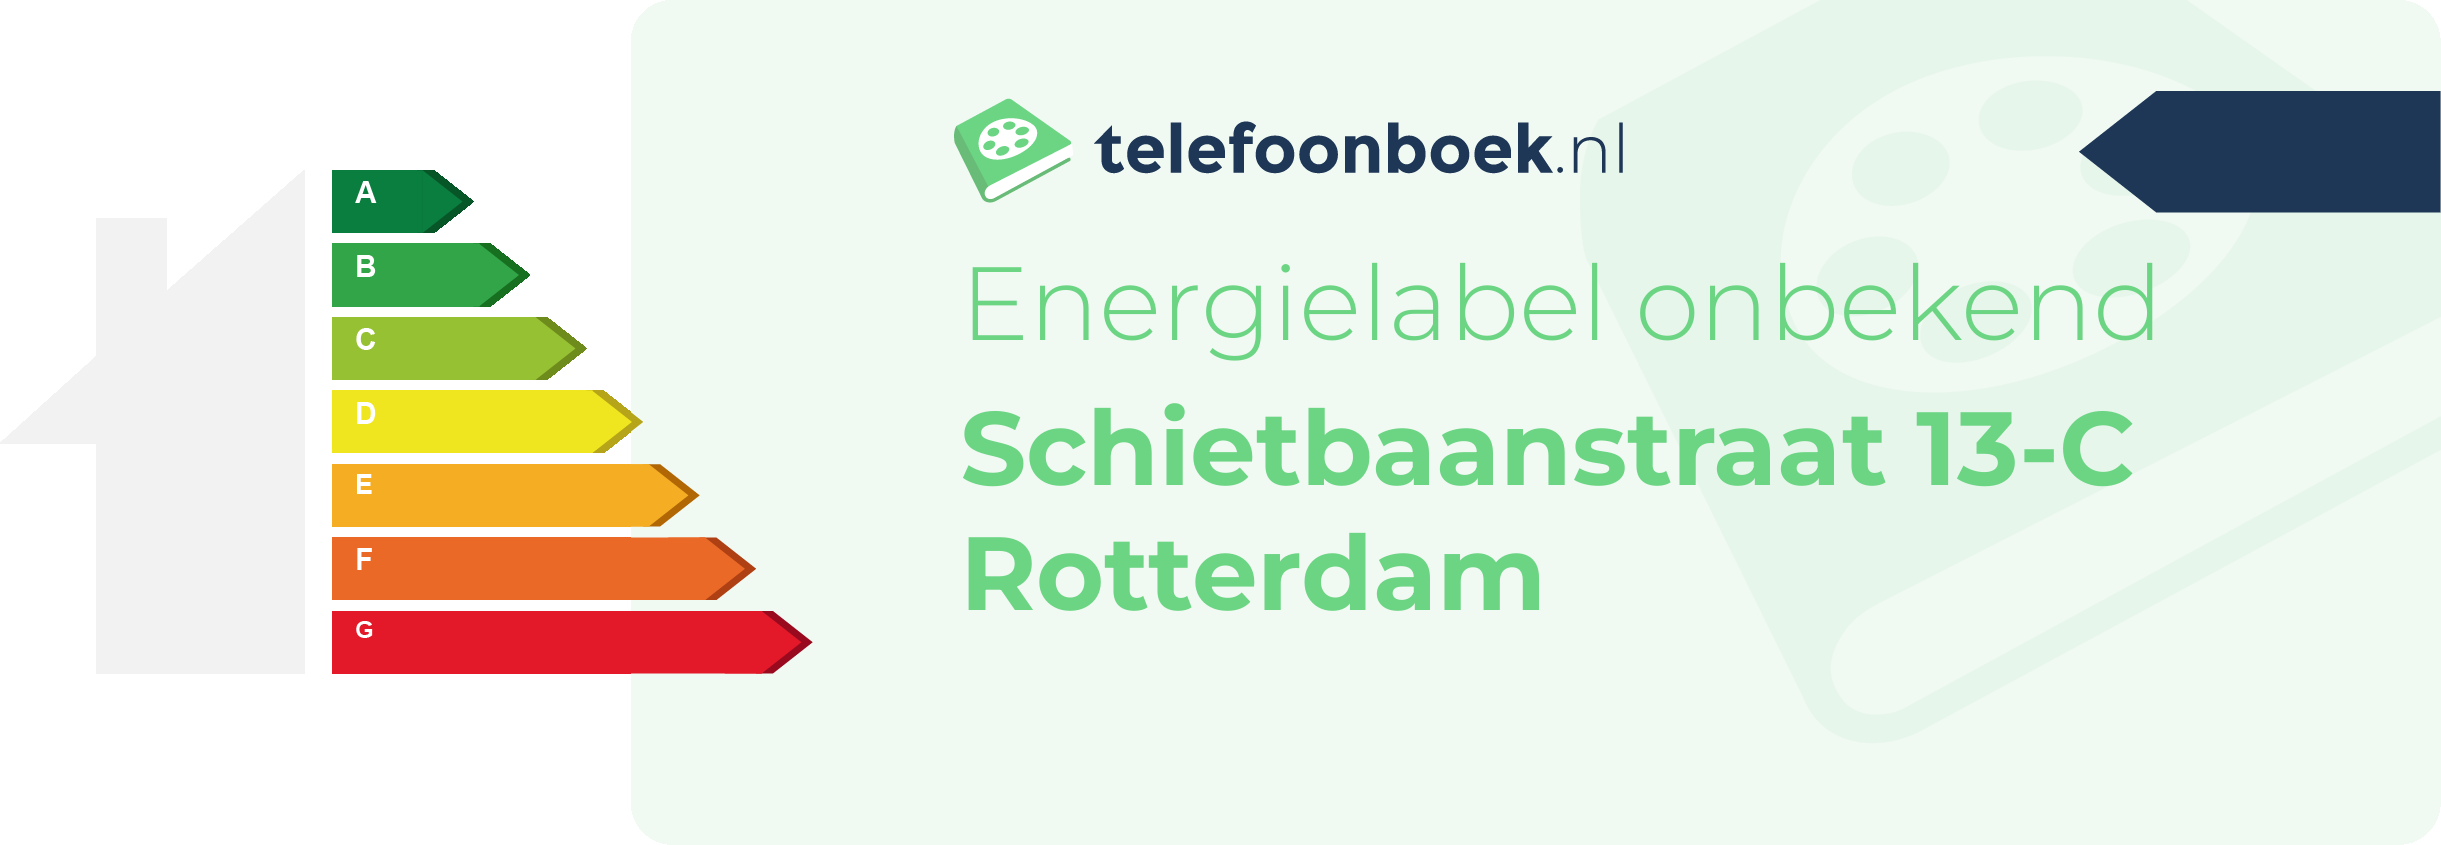 Energielabel Schietbaanstraat 13-C Rotterdam